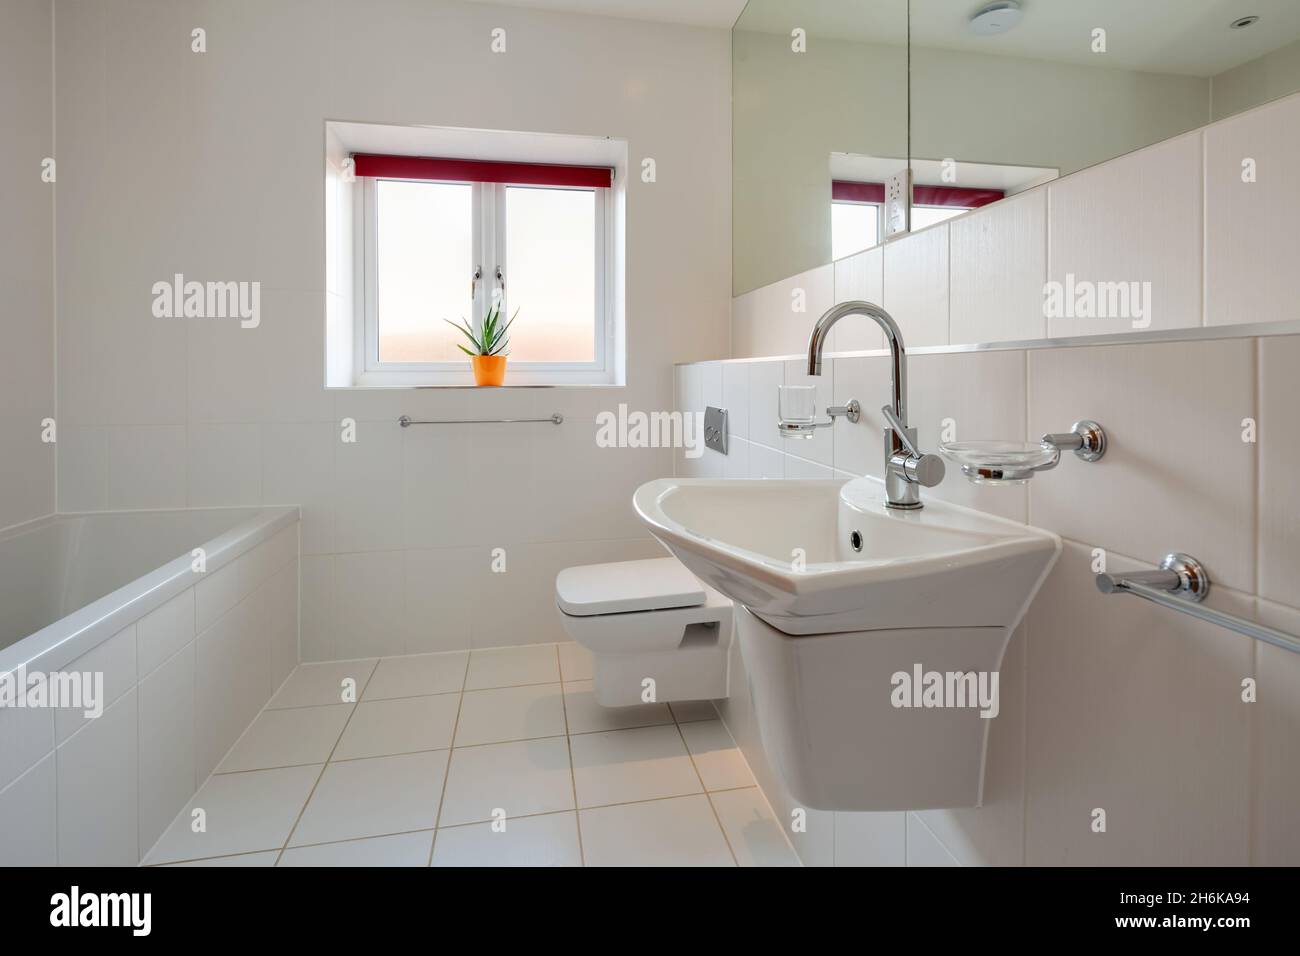 Essex, Angleterre - novembre 18 2019 : salle de bains entièrement carrelée blanche avec lavabo mural en céramique, baignoire et toilettes Banque D'Images